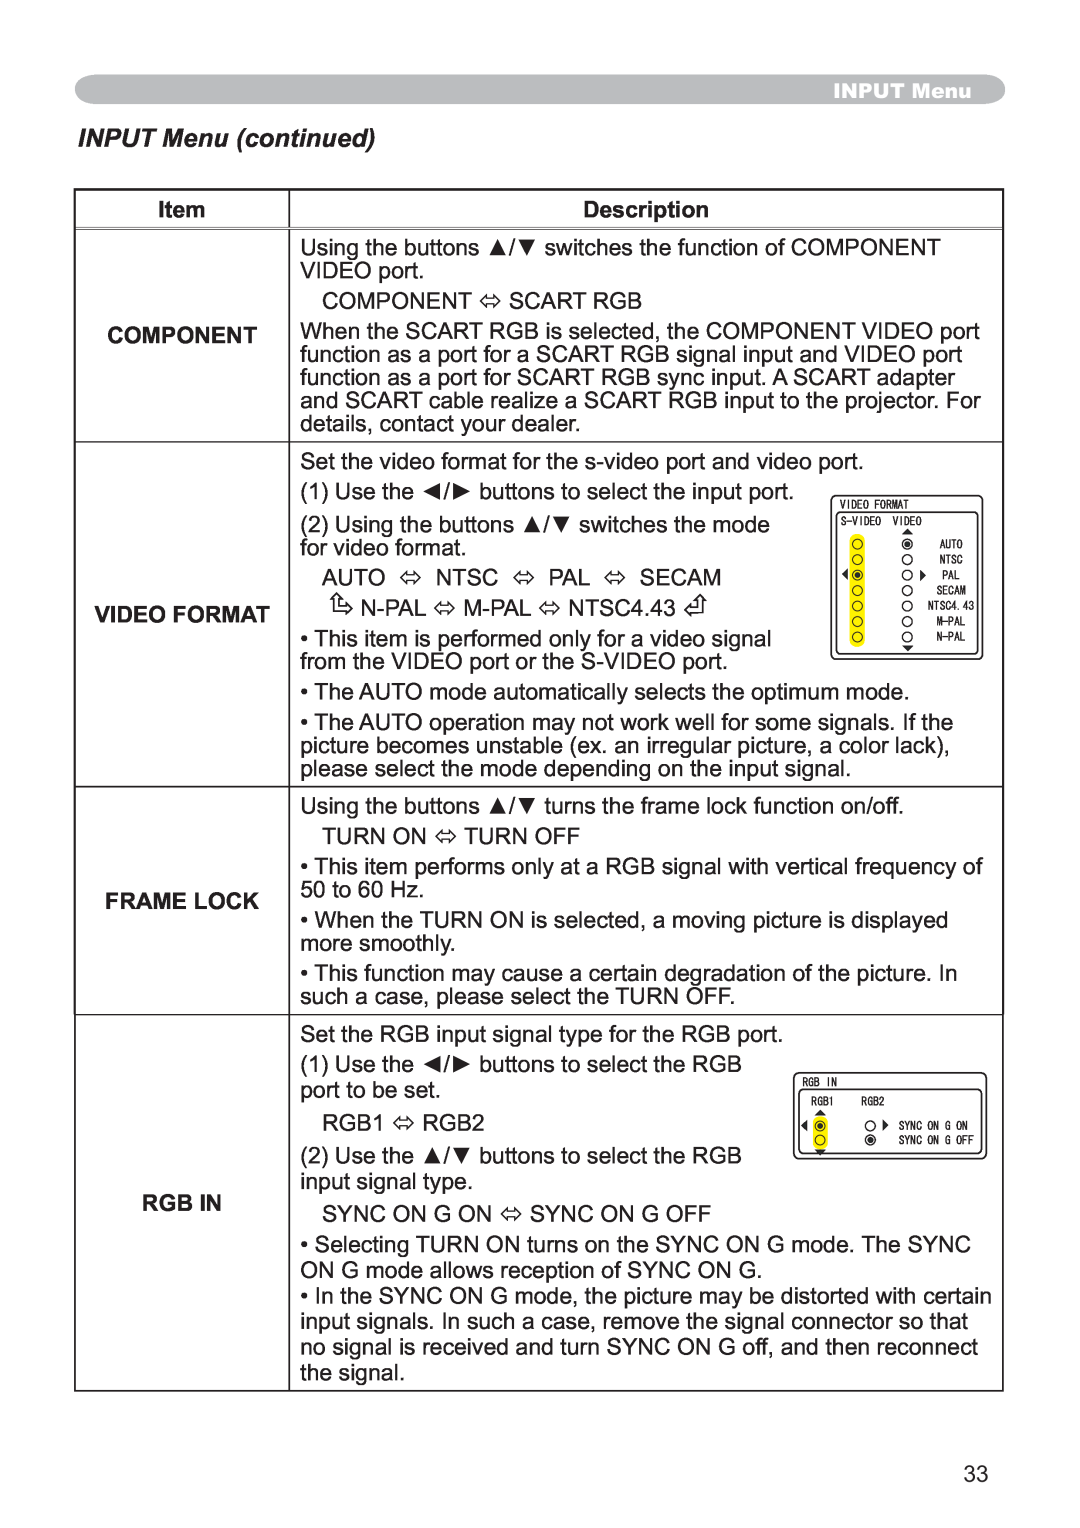 Hitachi CP-X251 user manual INPUT Menu continued, Description, Video Format, Frame Lock, Rgb In 